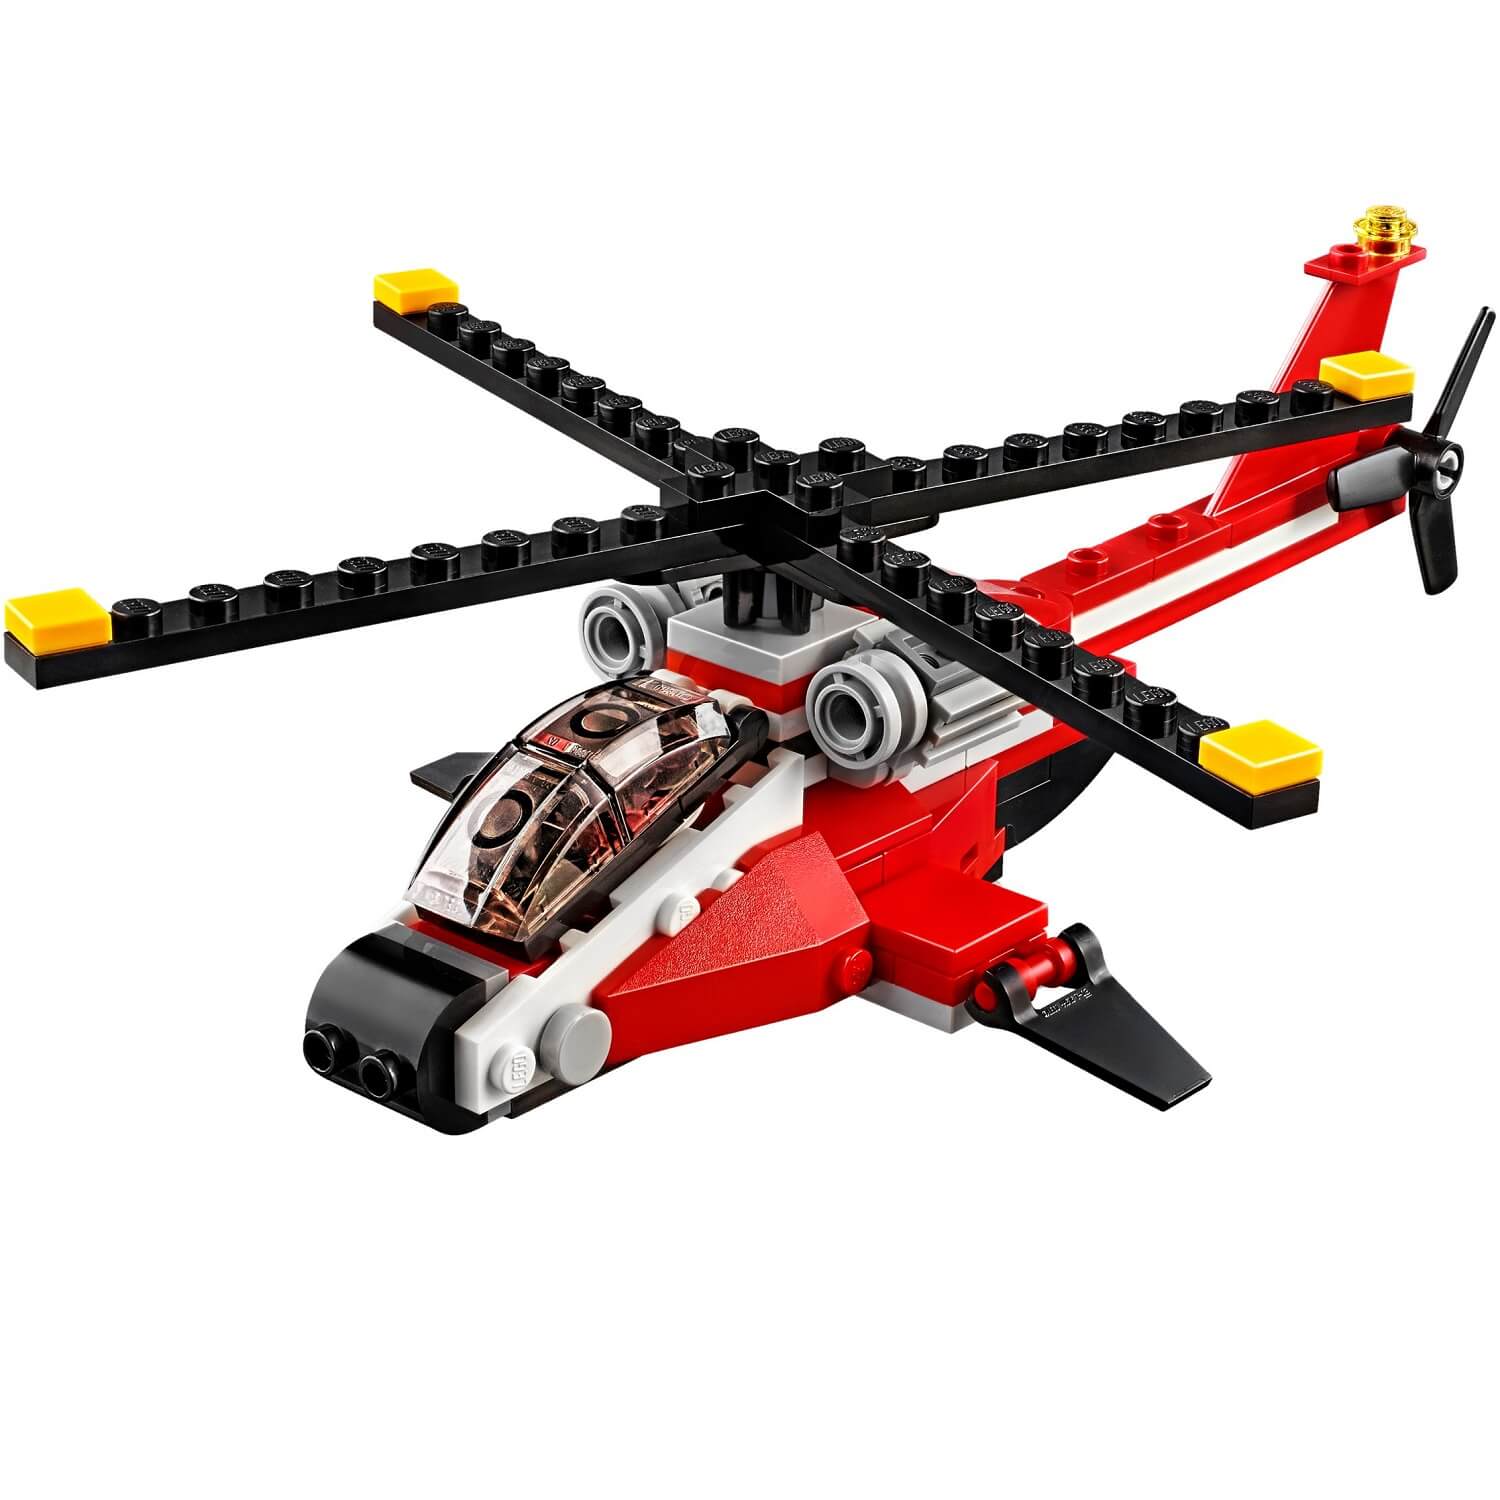 Estrella aerea ( Lego 31057 ) imagen a